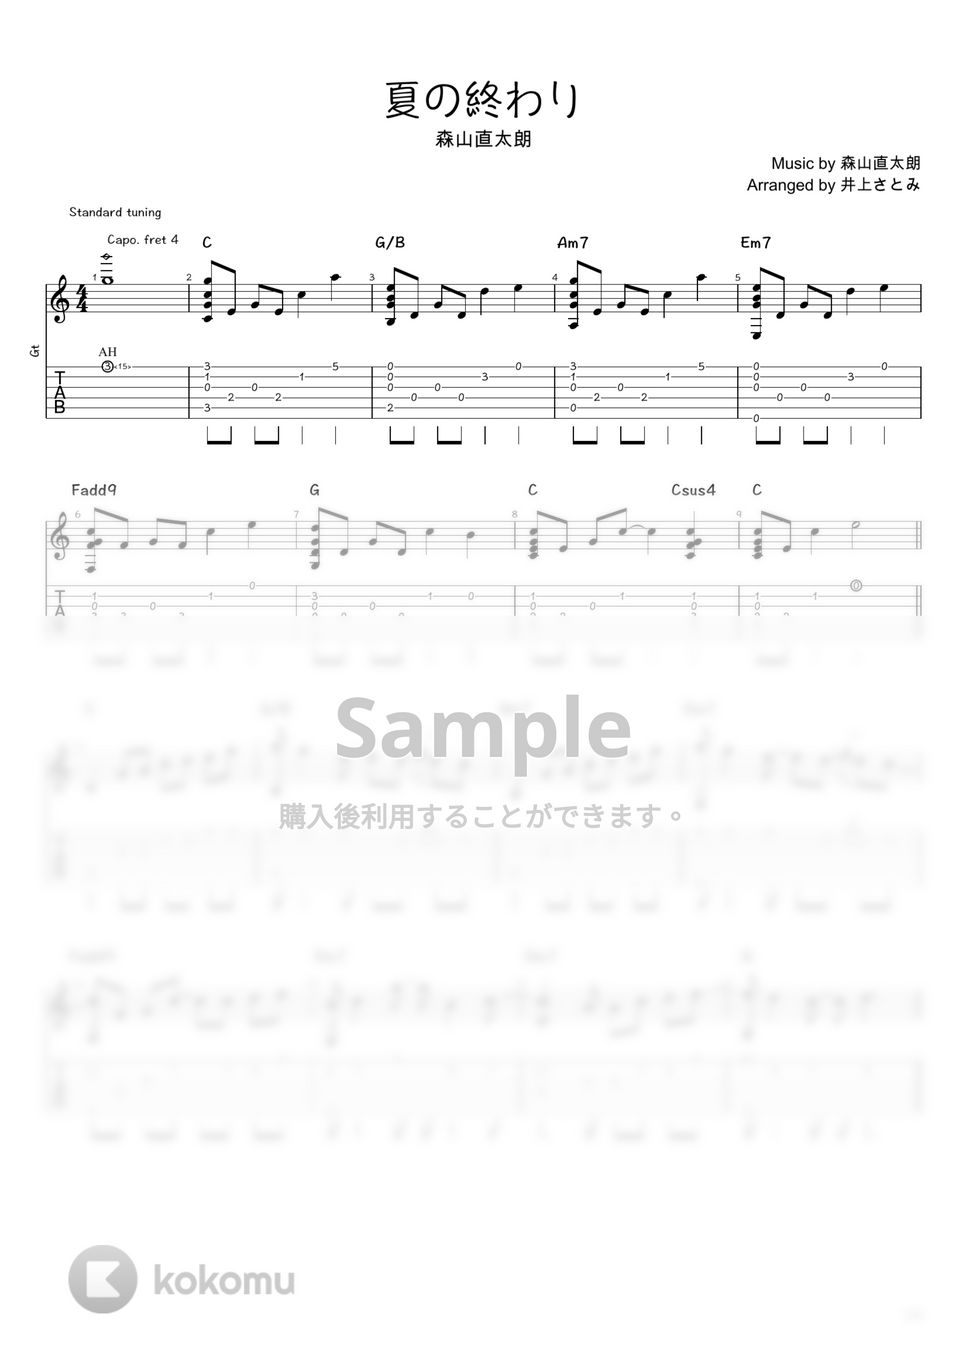 森山直太朗 - 夏の終わり (ソロギター / タブ譜) by 井上さとみ